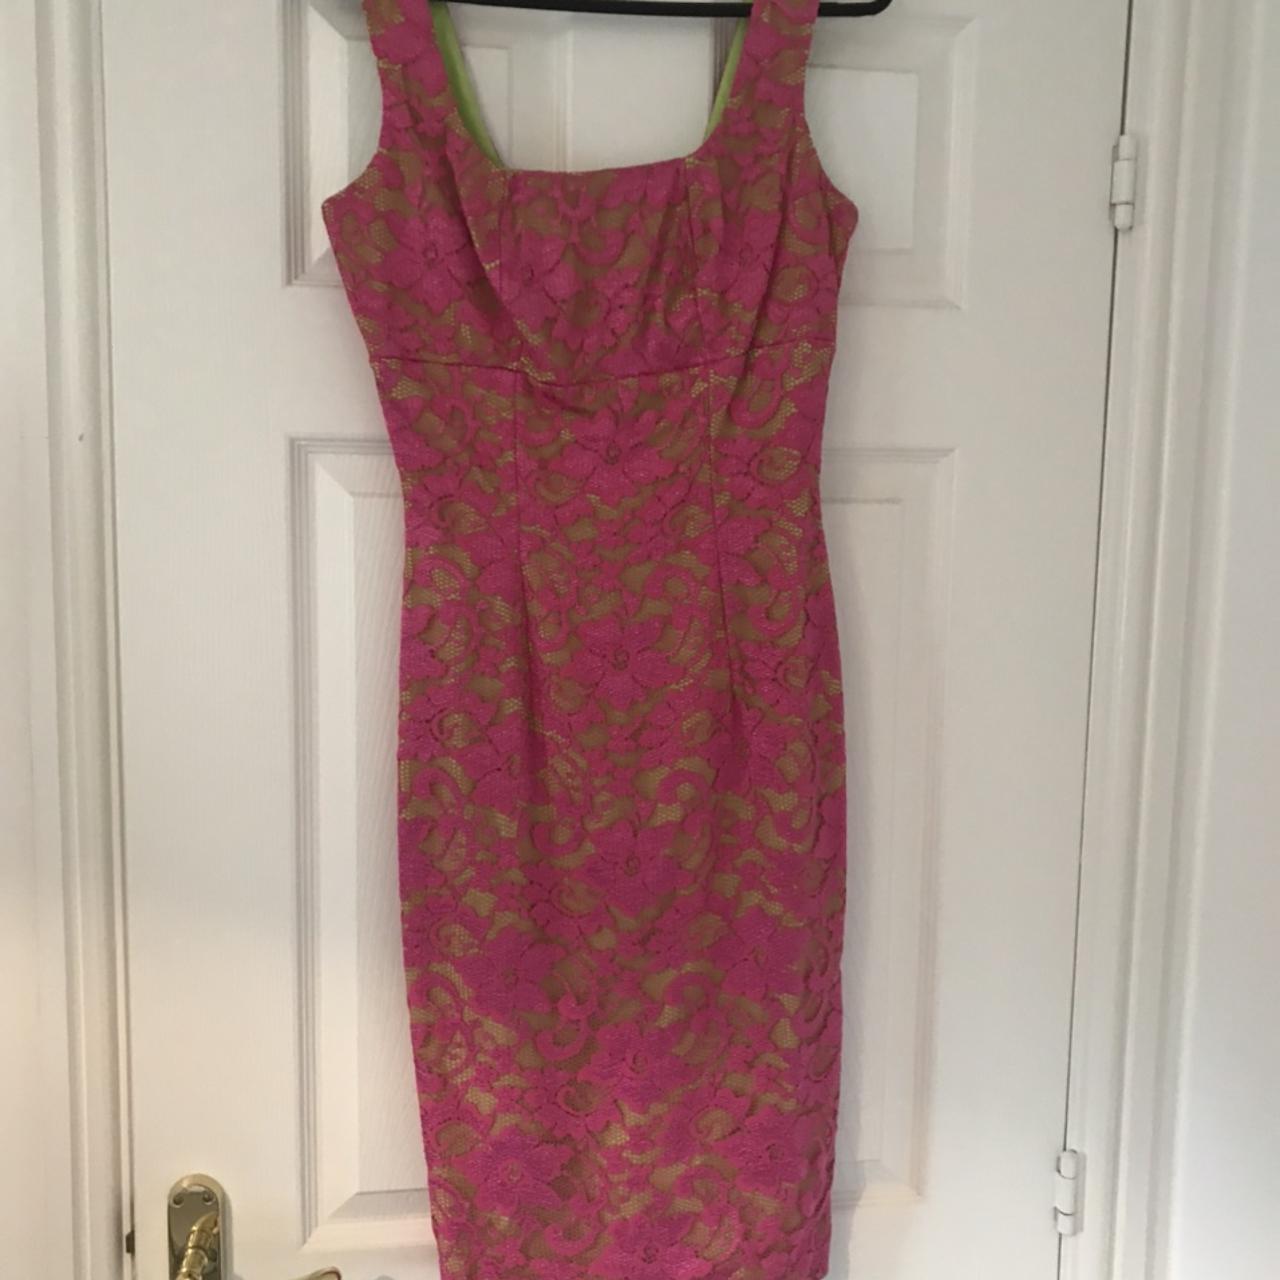 Hybrid Apparel Women's Pink and Green Dress | Depop